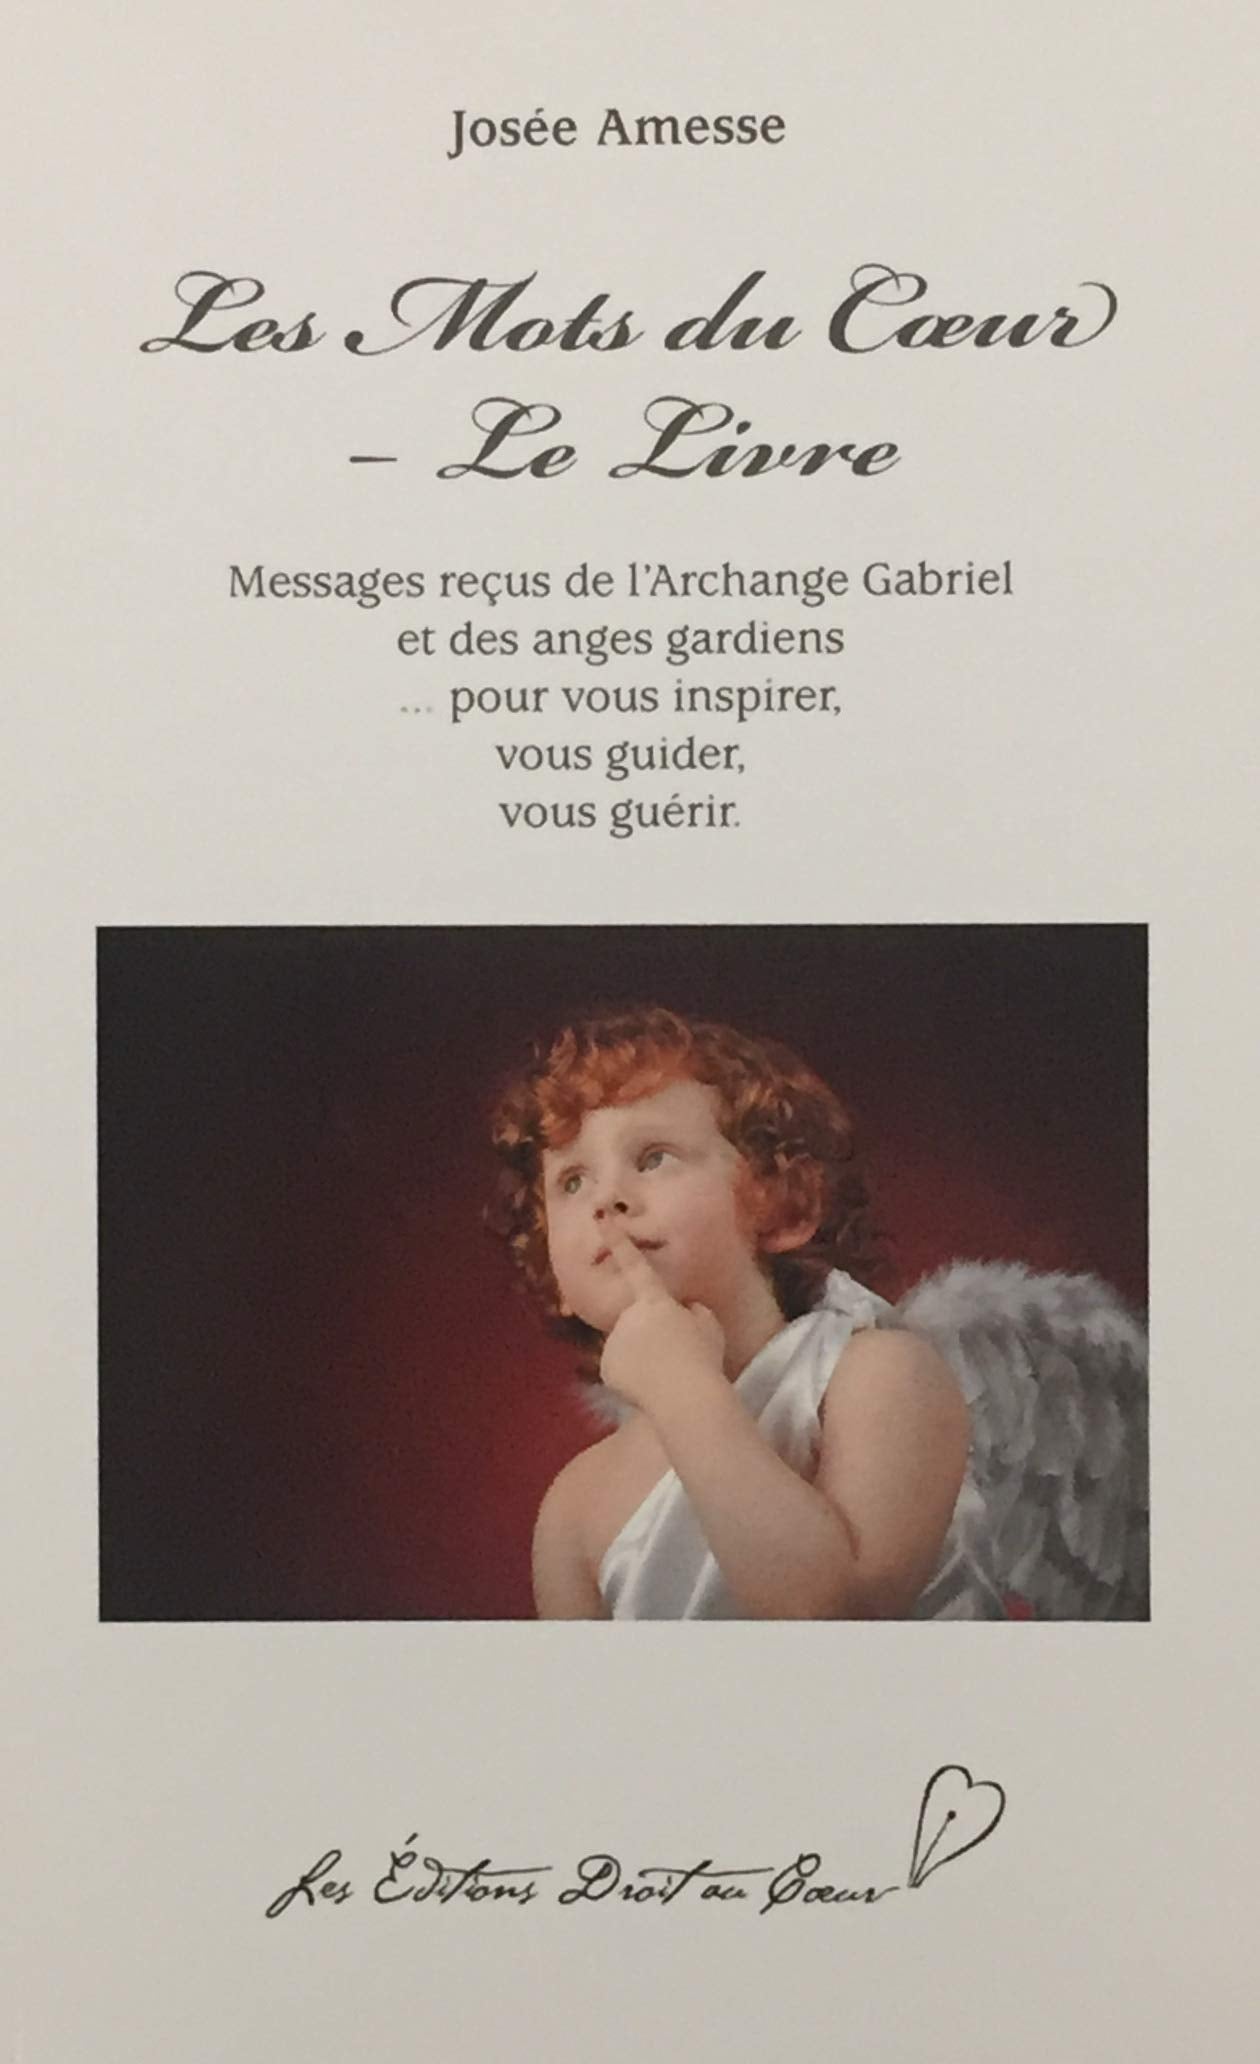 Livre ISBN 2980625035 Les mots du coeur - Le livre : Messages reçus de l'Archange Gabriel et des anges gardiens (Josée Amesse)